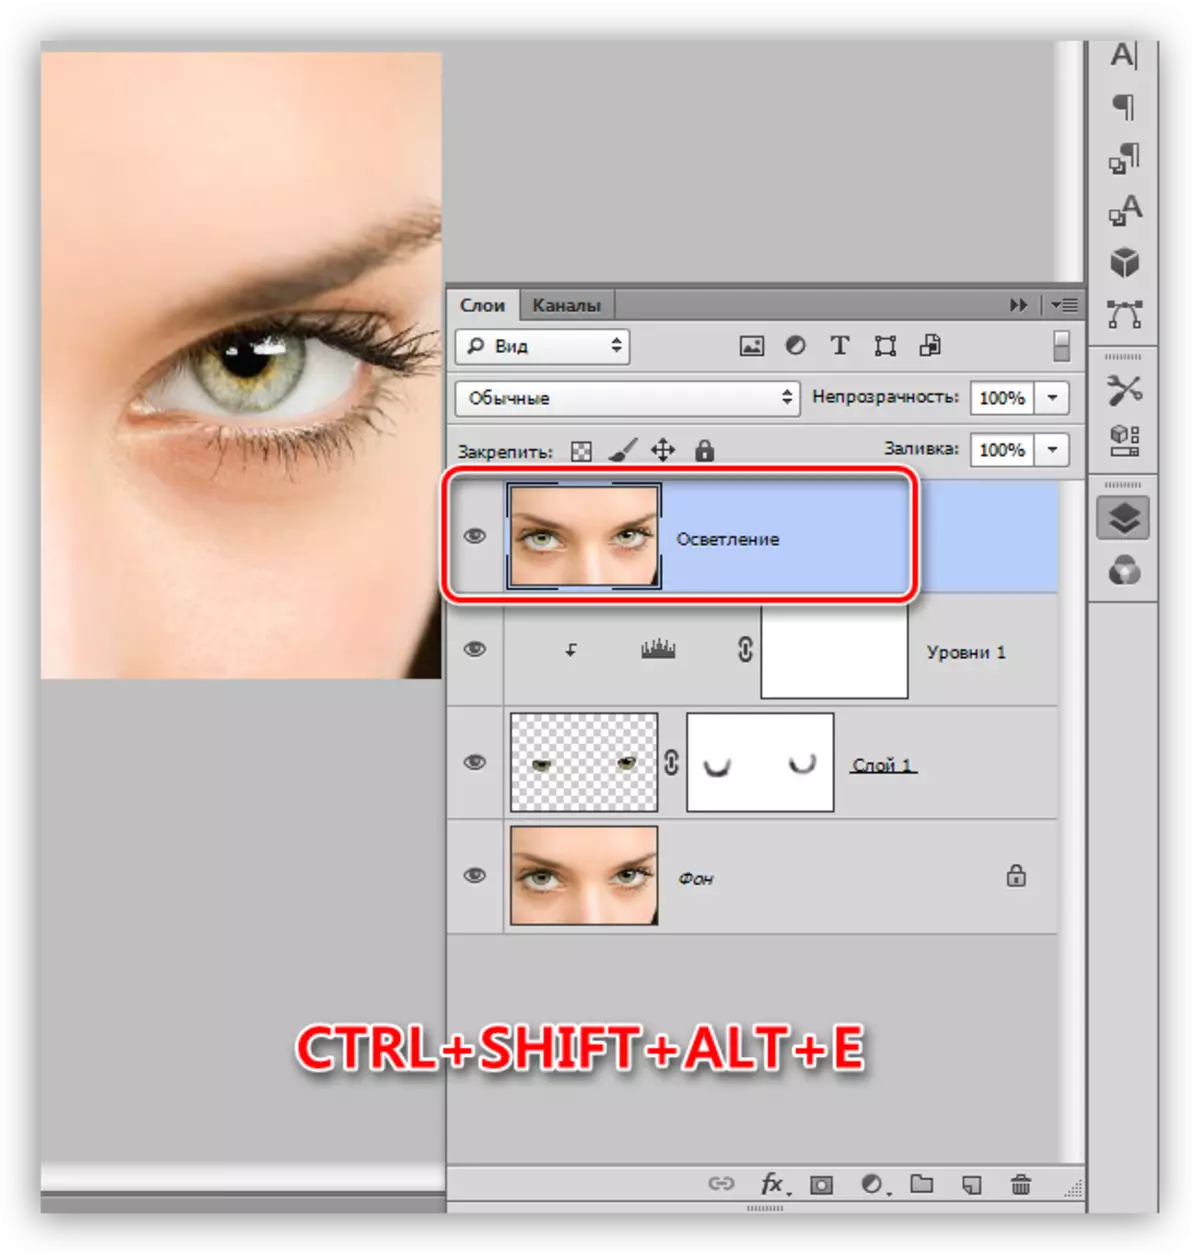 Criando uma cópia combinada de todas as camadas na paleta ao selecionar um olho no Photoshop